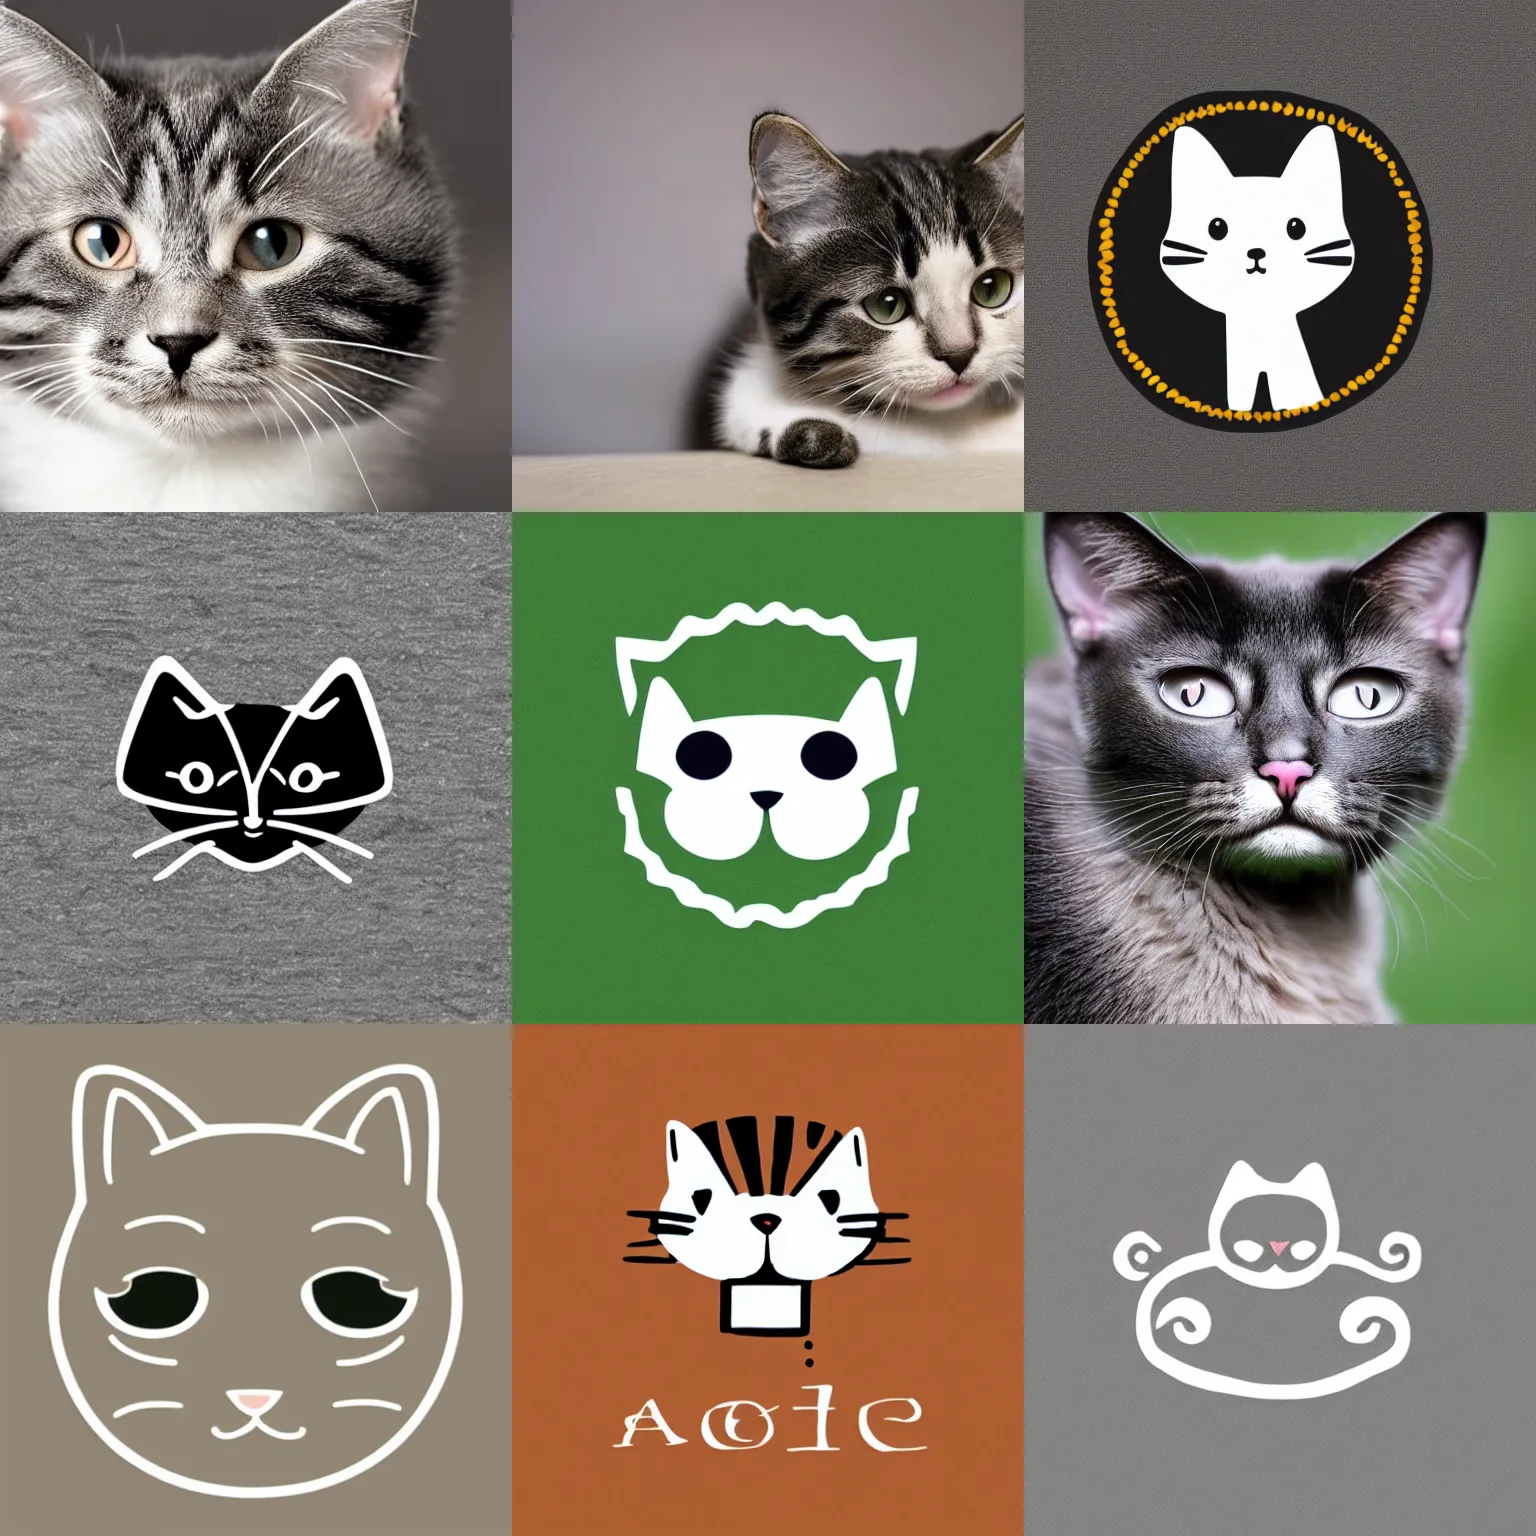 Prompt: A cute logo of a cat, symmetric